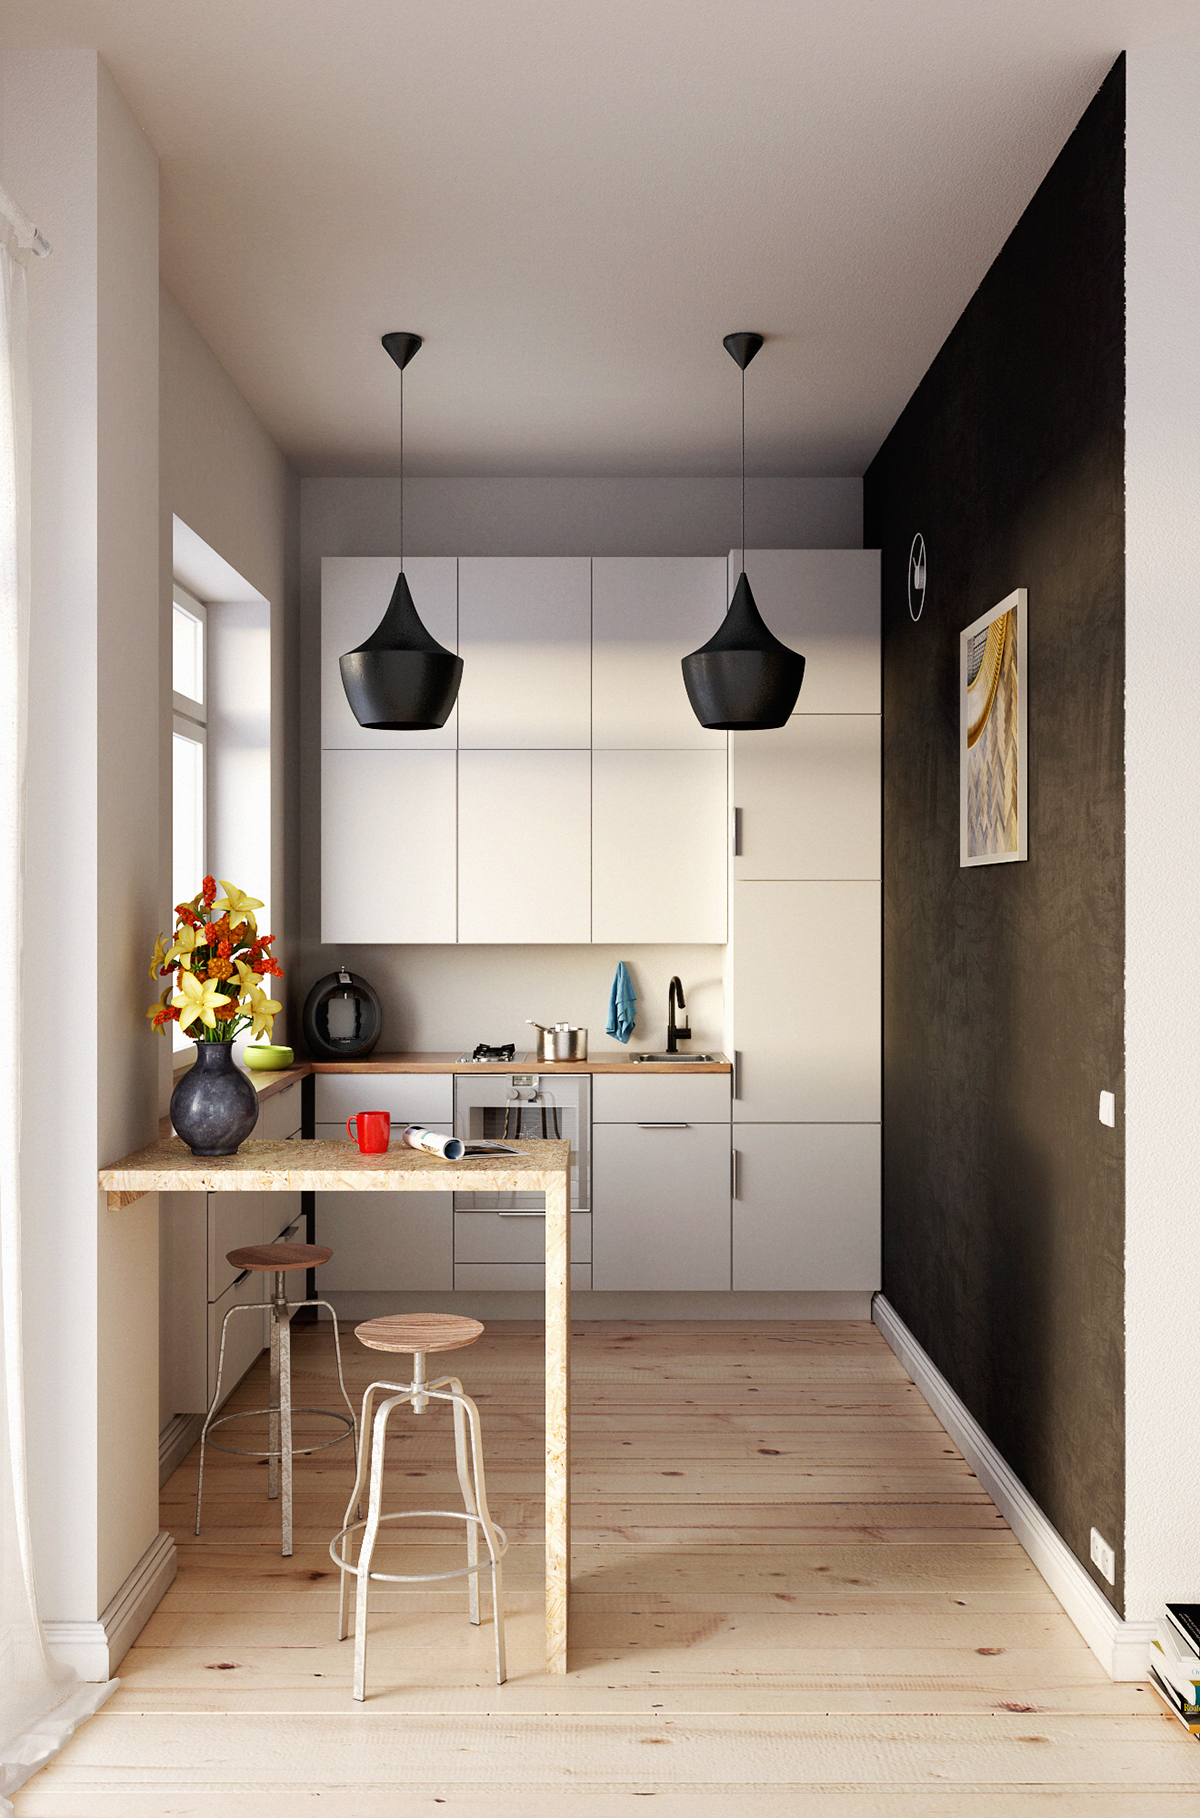 kitchen rendering vray Interior